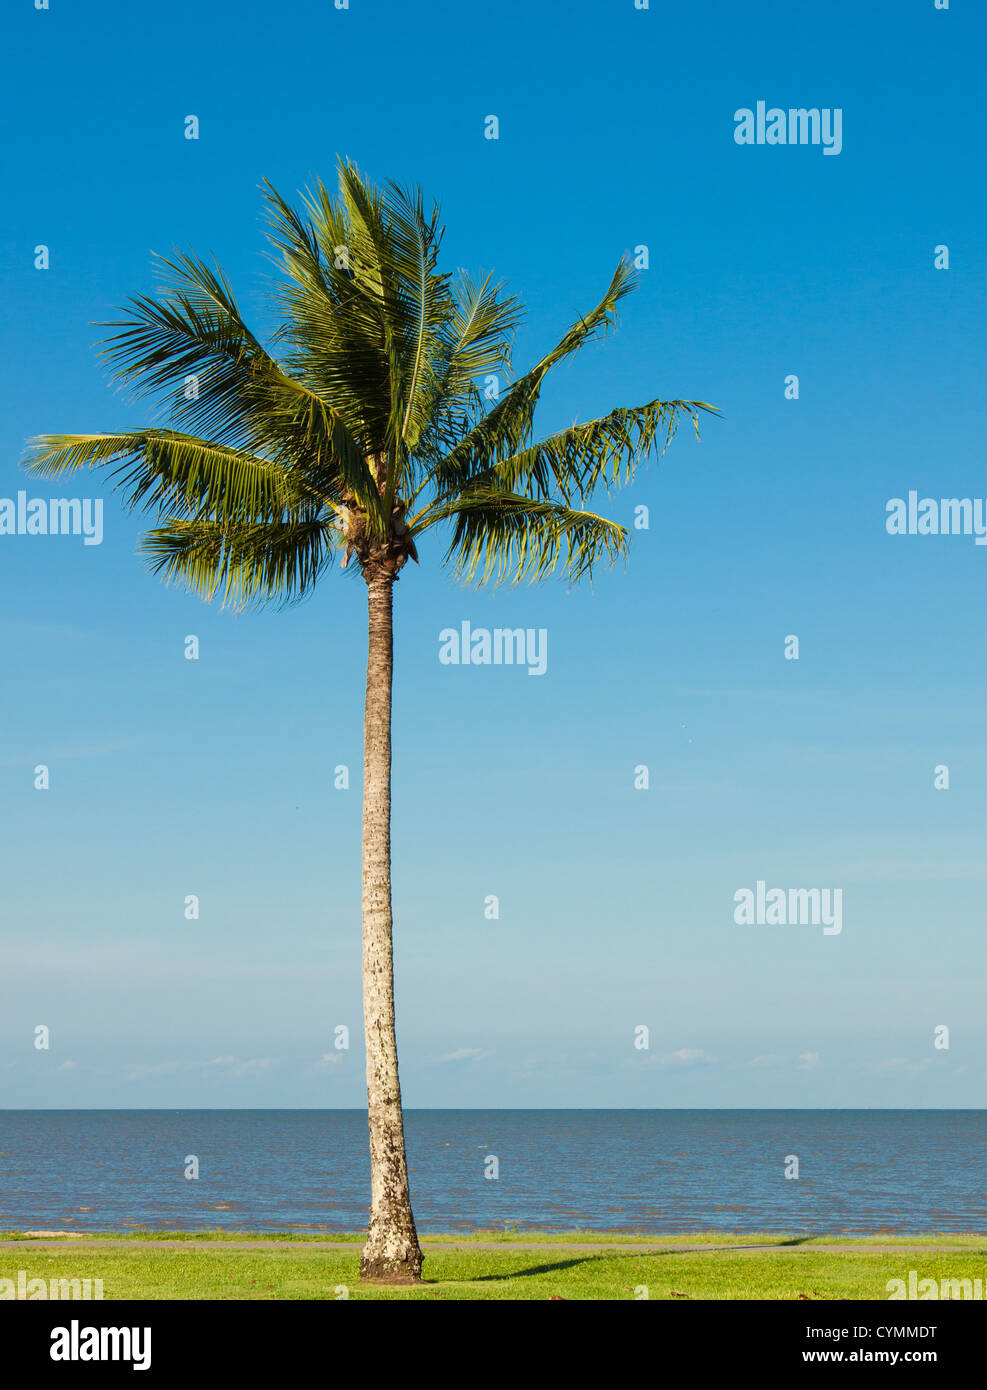 Ein einsamer Kokospalme auf einem tropischen Strand mit einem schönen blauen Himmel im Hintergrund. Stockfoto